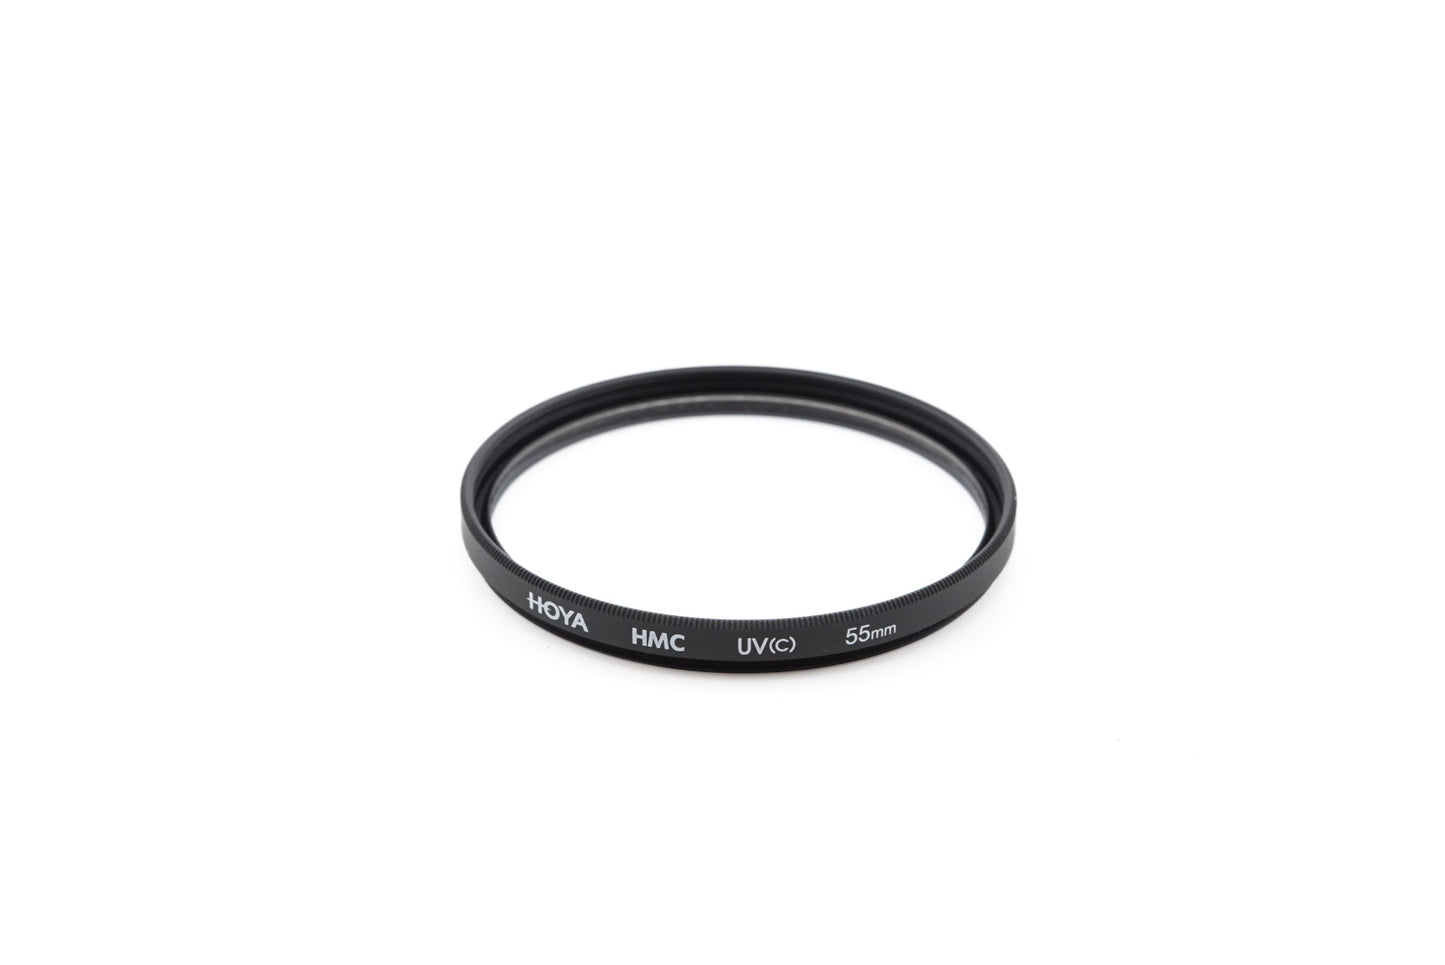 Hoya 55mm UV Filter HMC UV(c) - Accessory